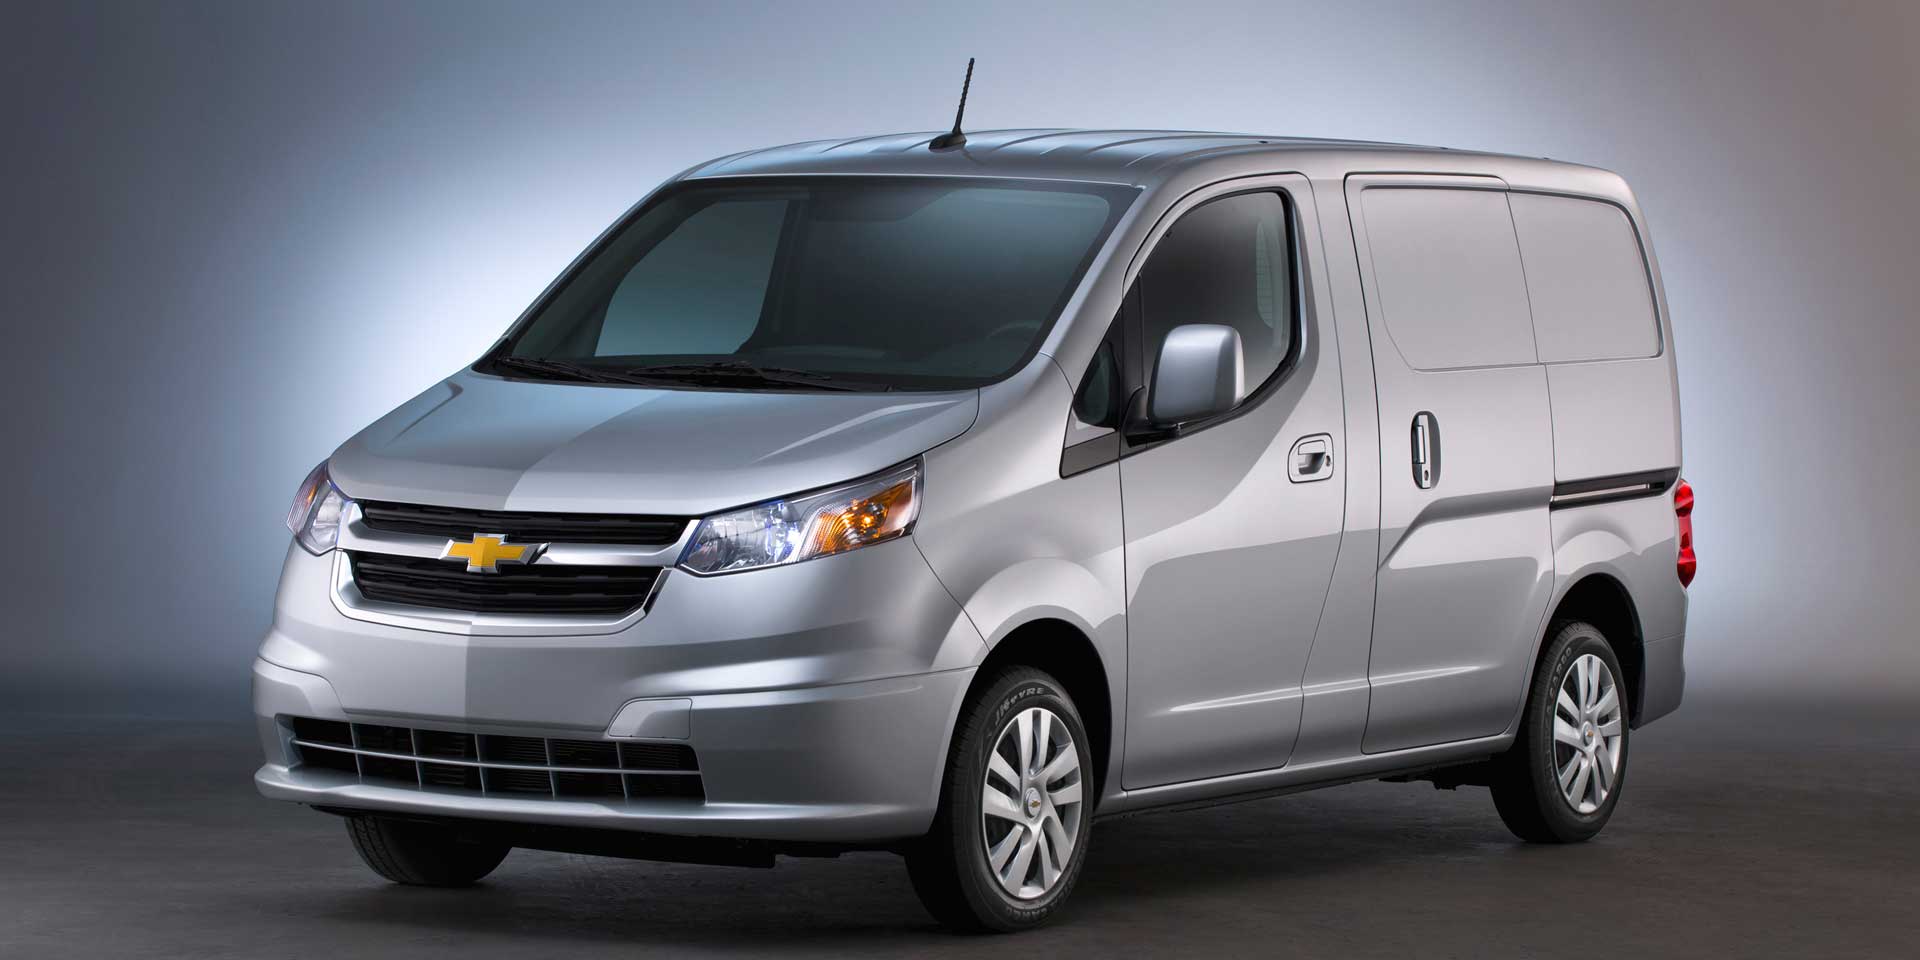 2021 Chevrolet Express Passenger Van Specs, Interior Redesign Release